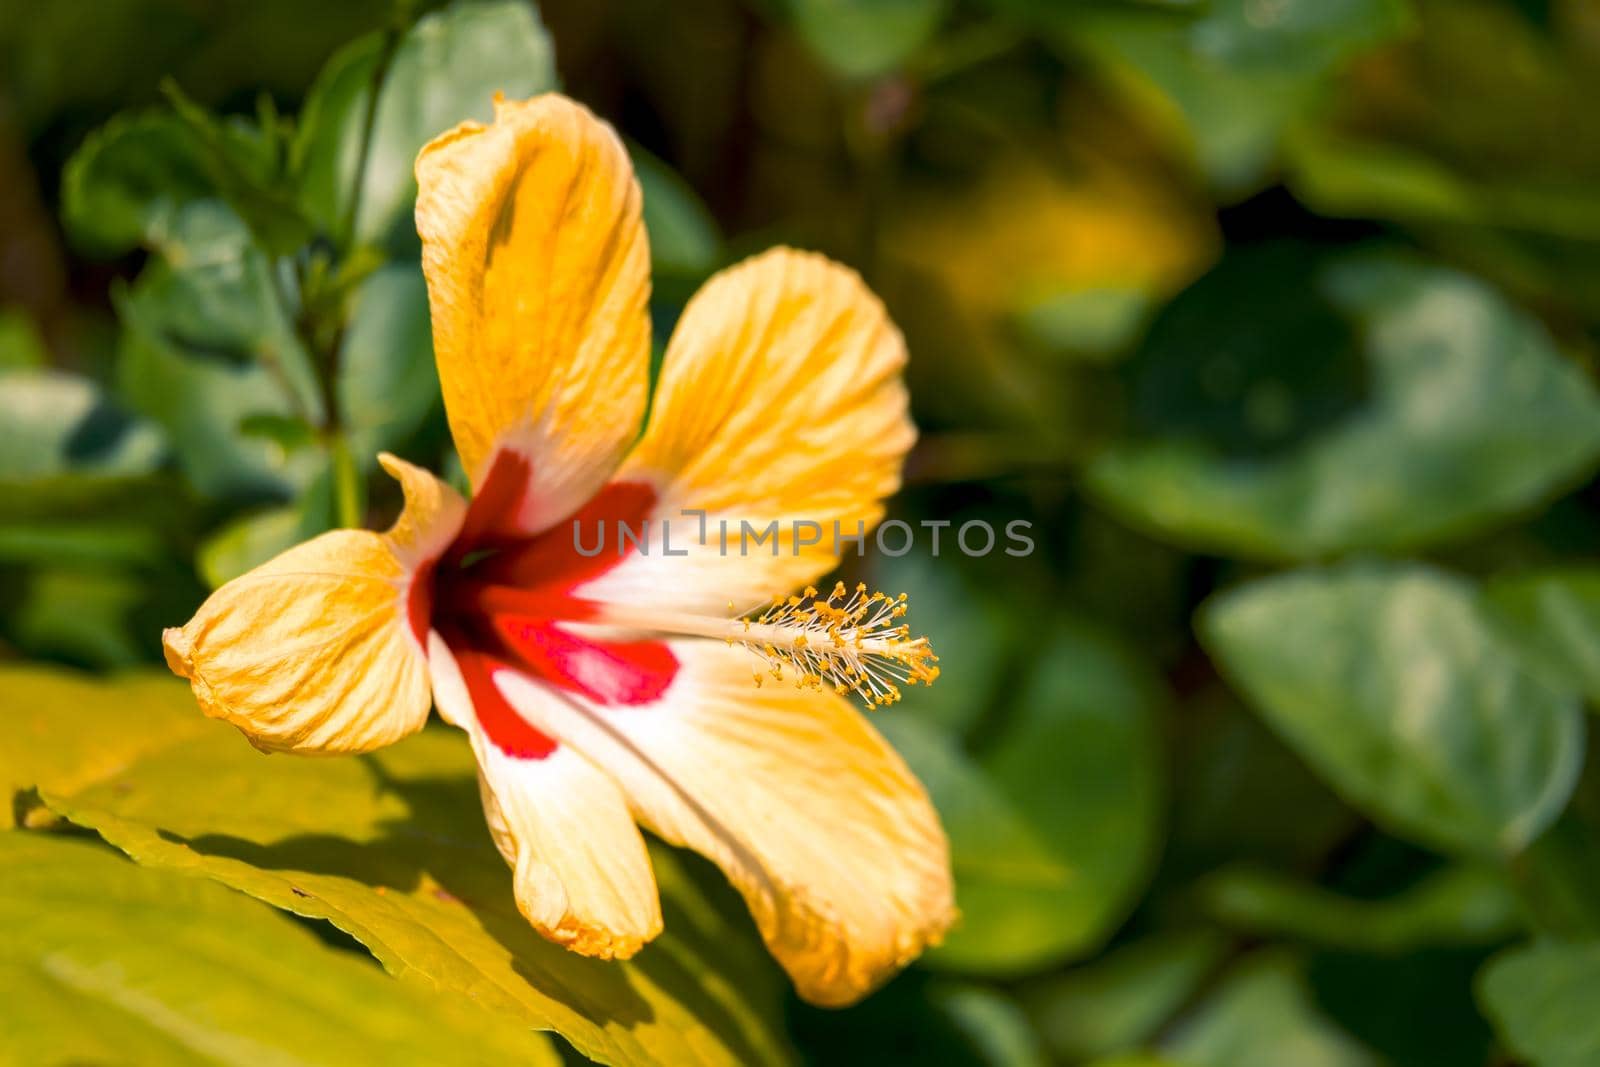 yellow Hibiscus flower, Costa Rica nature by artush